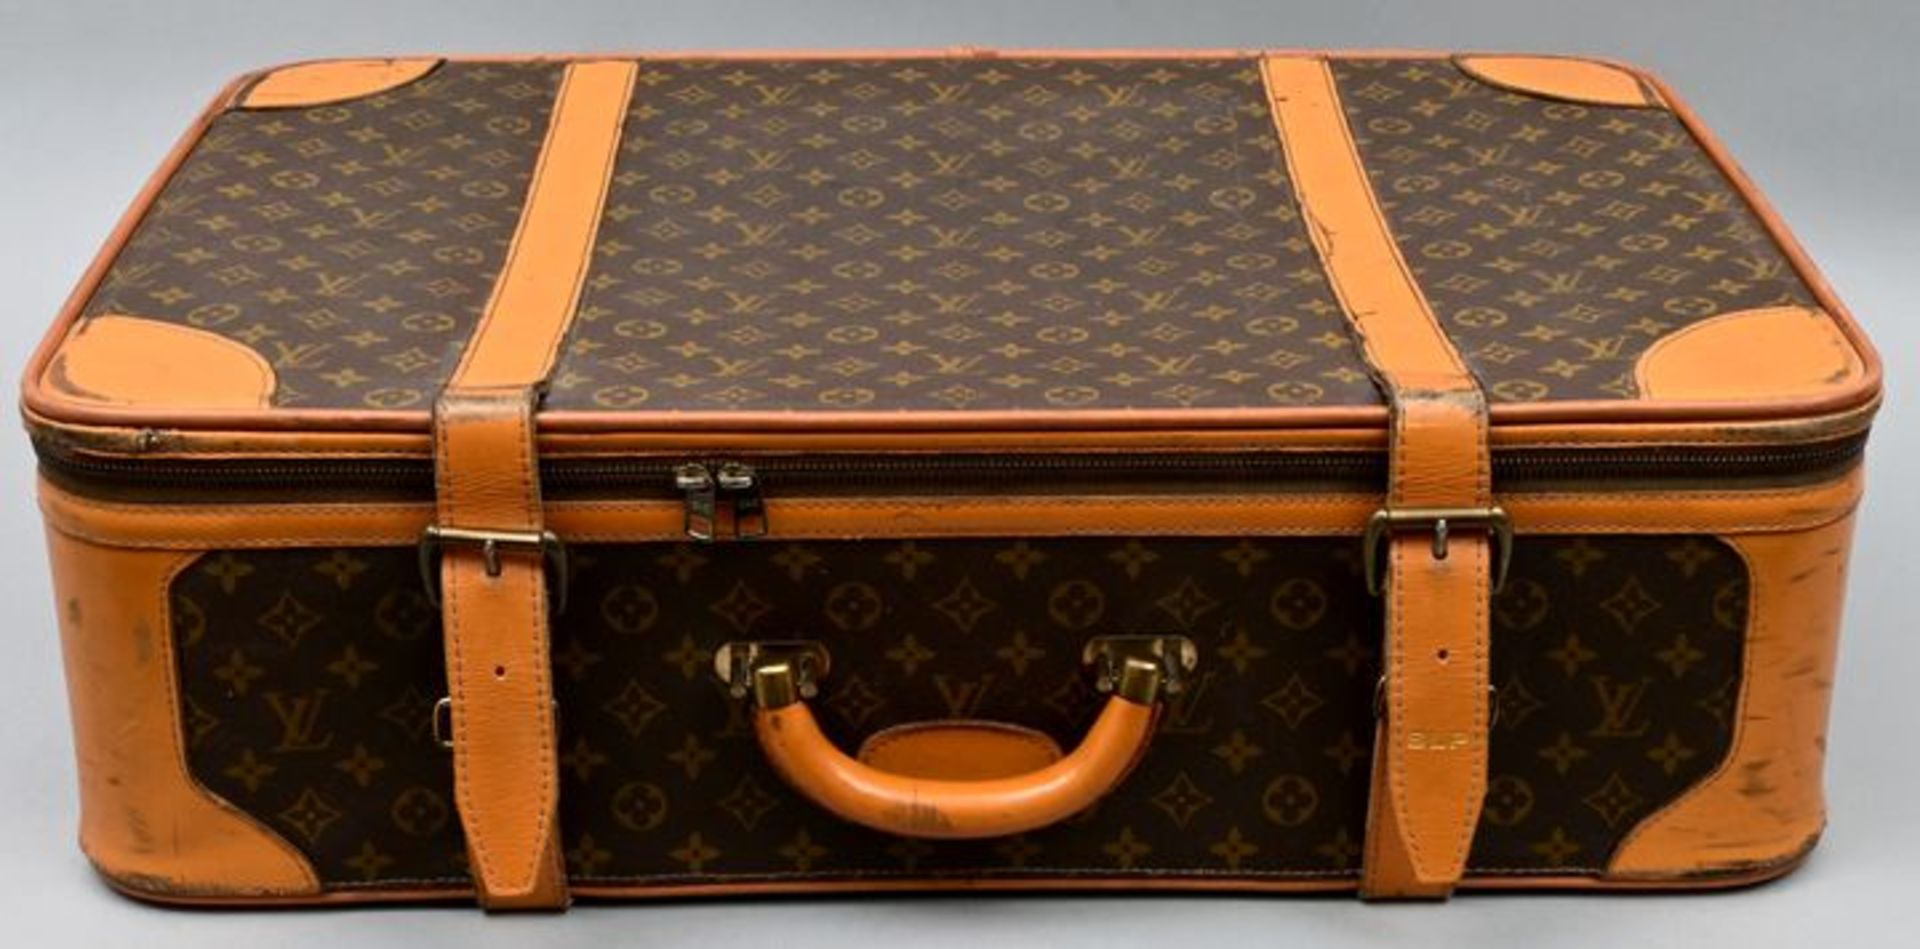 Großer Koffer LV / Large suitcase LV